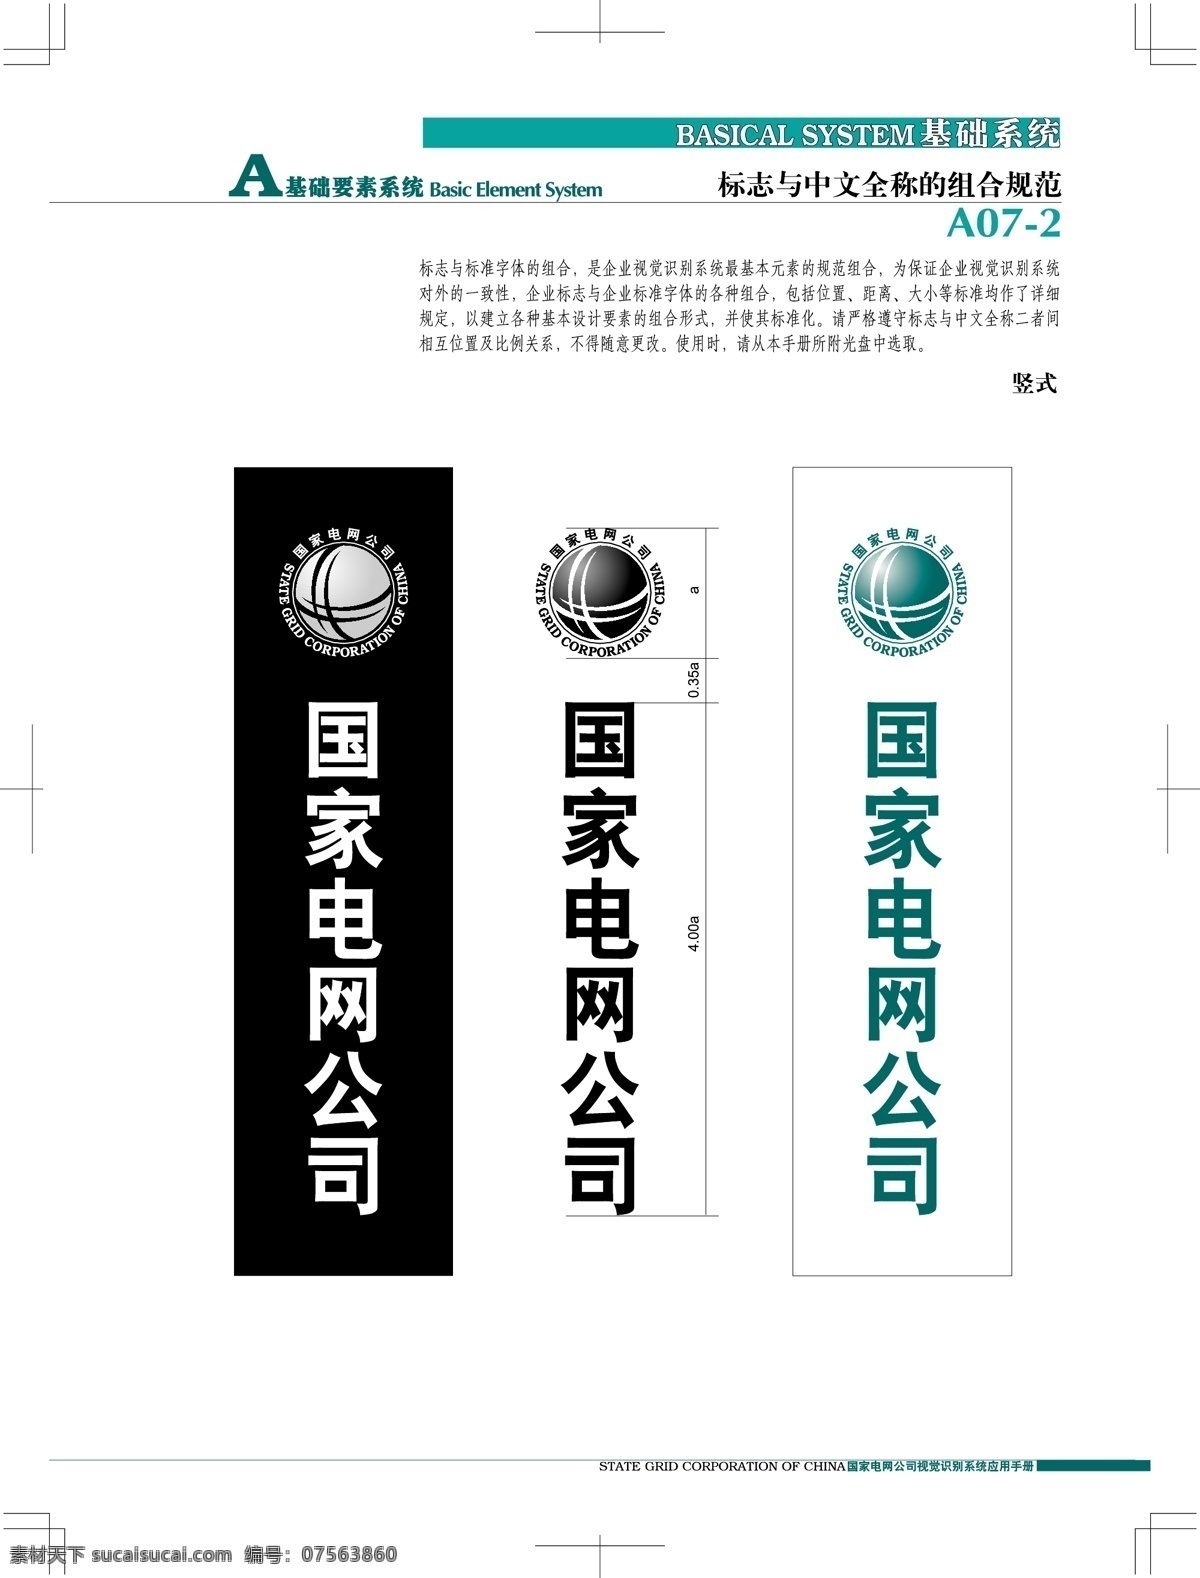 中国 国电 vi 矢量 格式 标识标志图标 企业 logo 标志 矢量图 矢量图库 仅 供 大家 学习 参考 之用 建筑家居